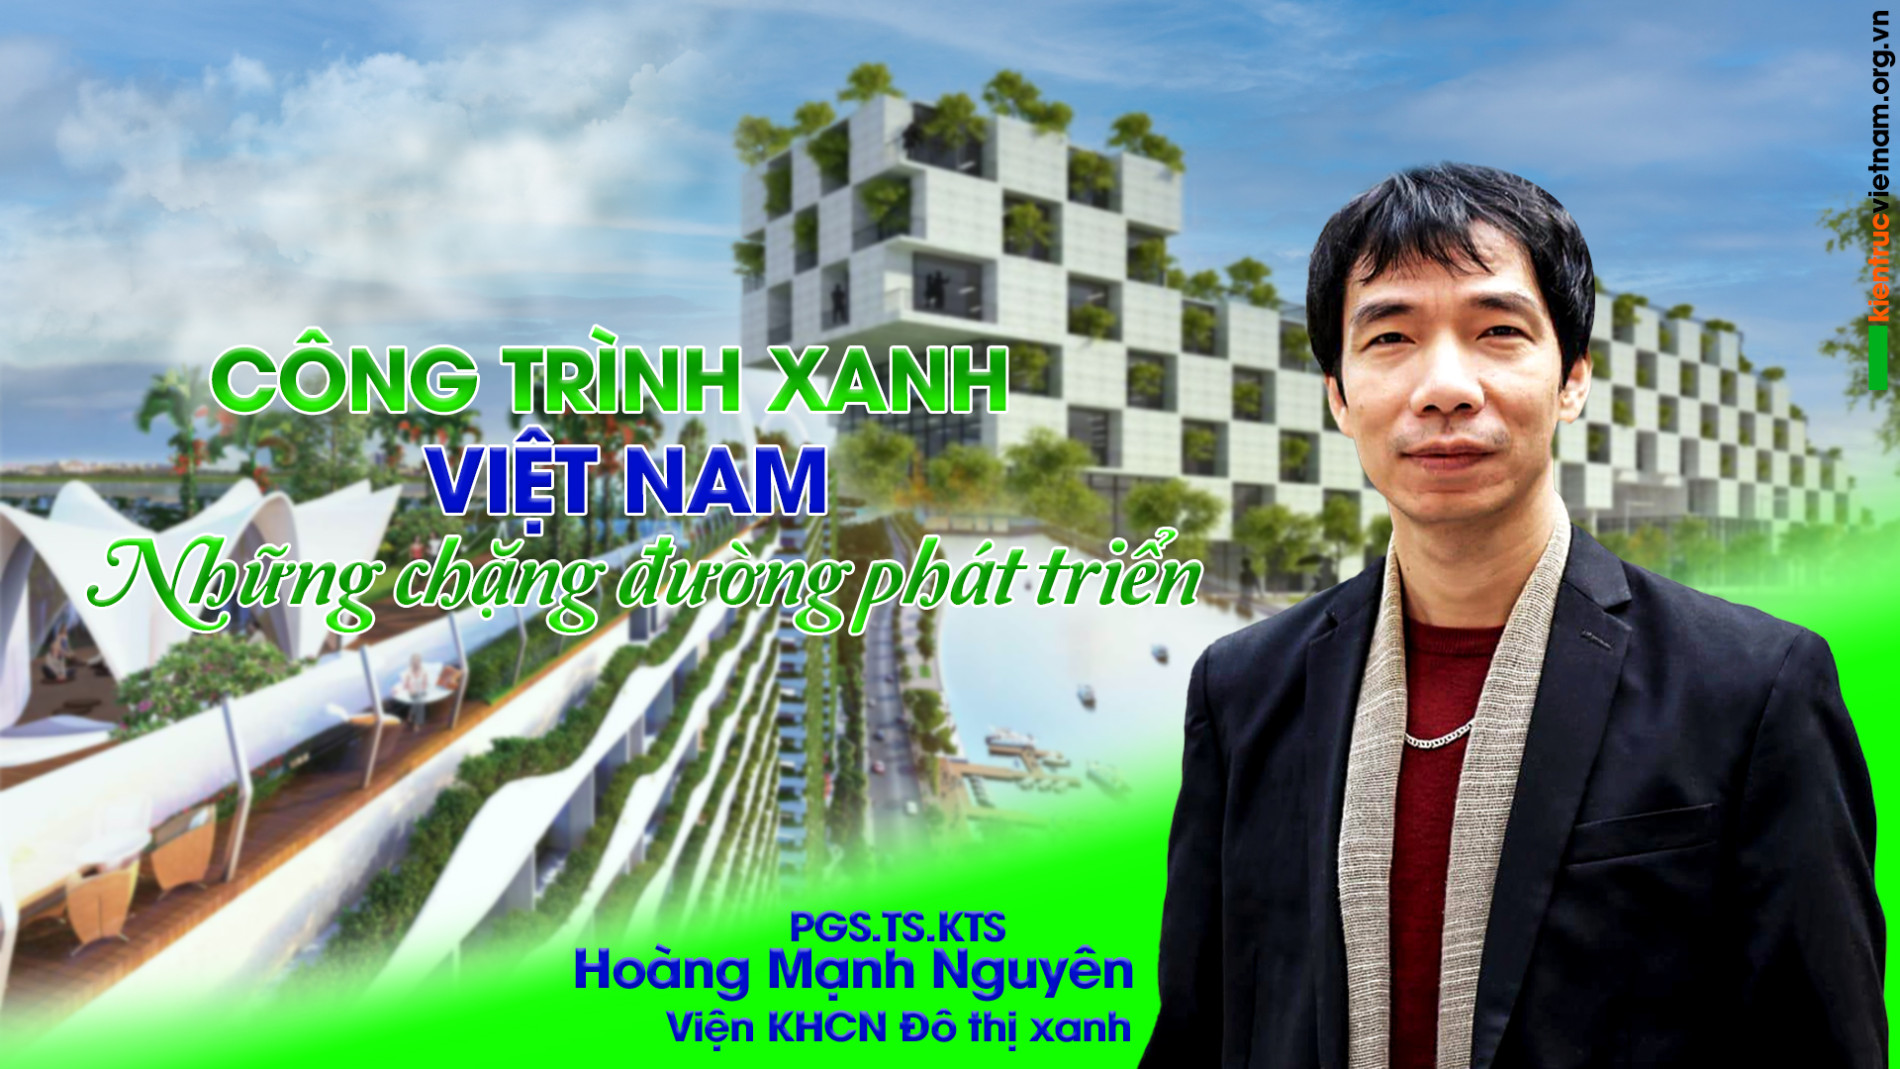 Công trình xanh Việt Nam – những chặng đường phát triển - Tạp chí Kiến trúc Việt Nam